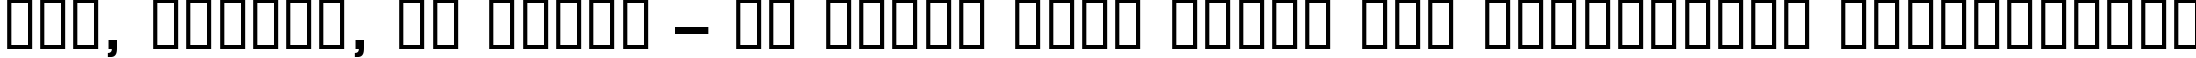 Пример написания шрифтом Square721 Dm Normal текста на украинском